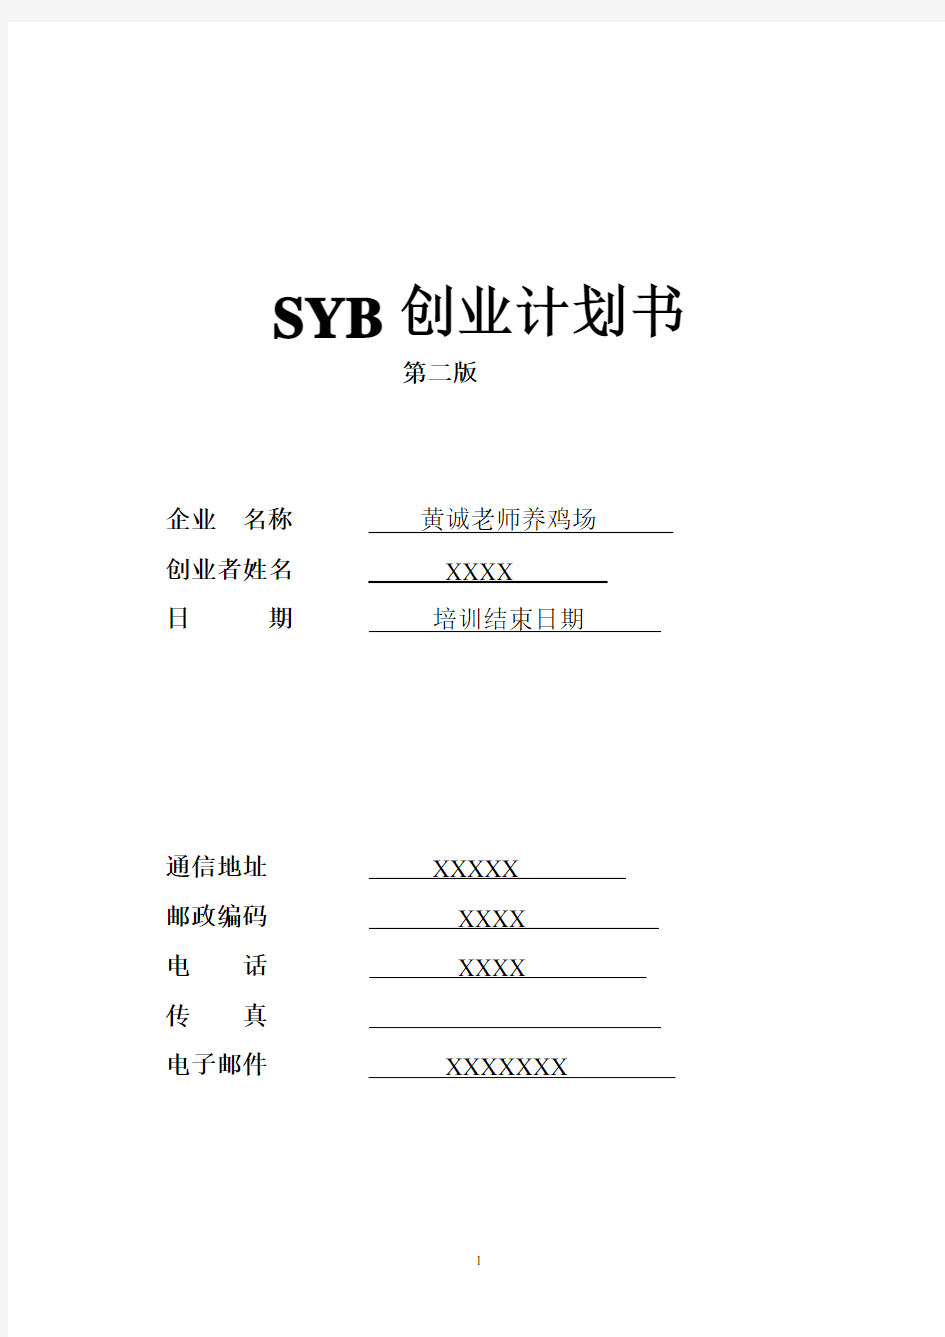 219黄诚老师SYB创业计划书-养鸡场(第二版)